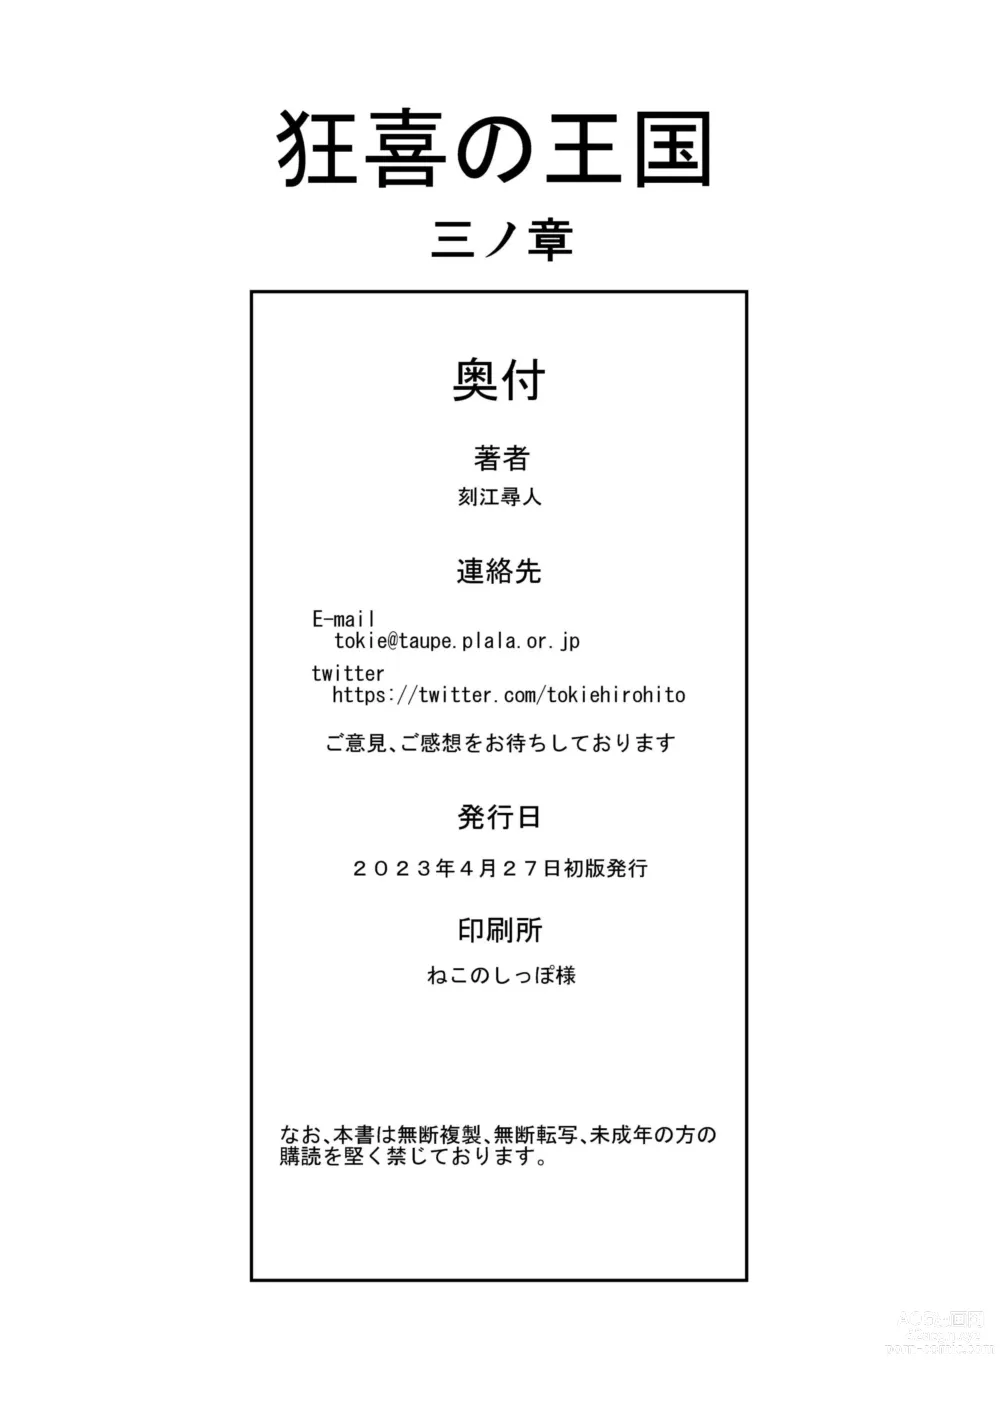 Page 36 of doujinshi Kyouki no Oukoku San no Shou